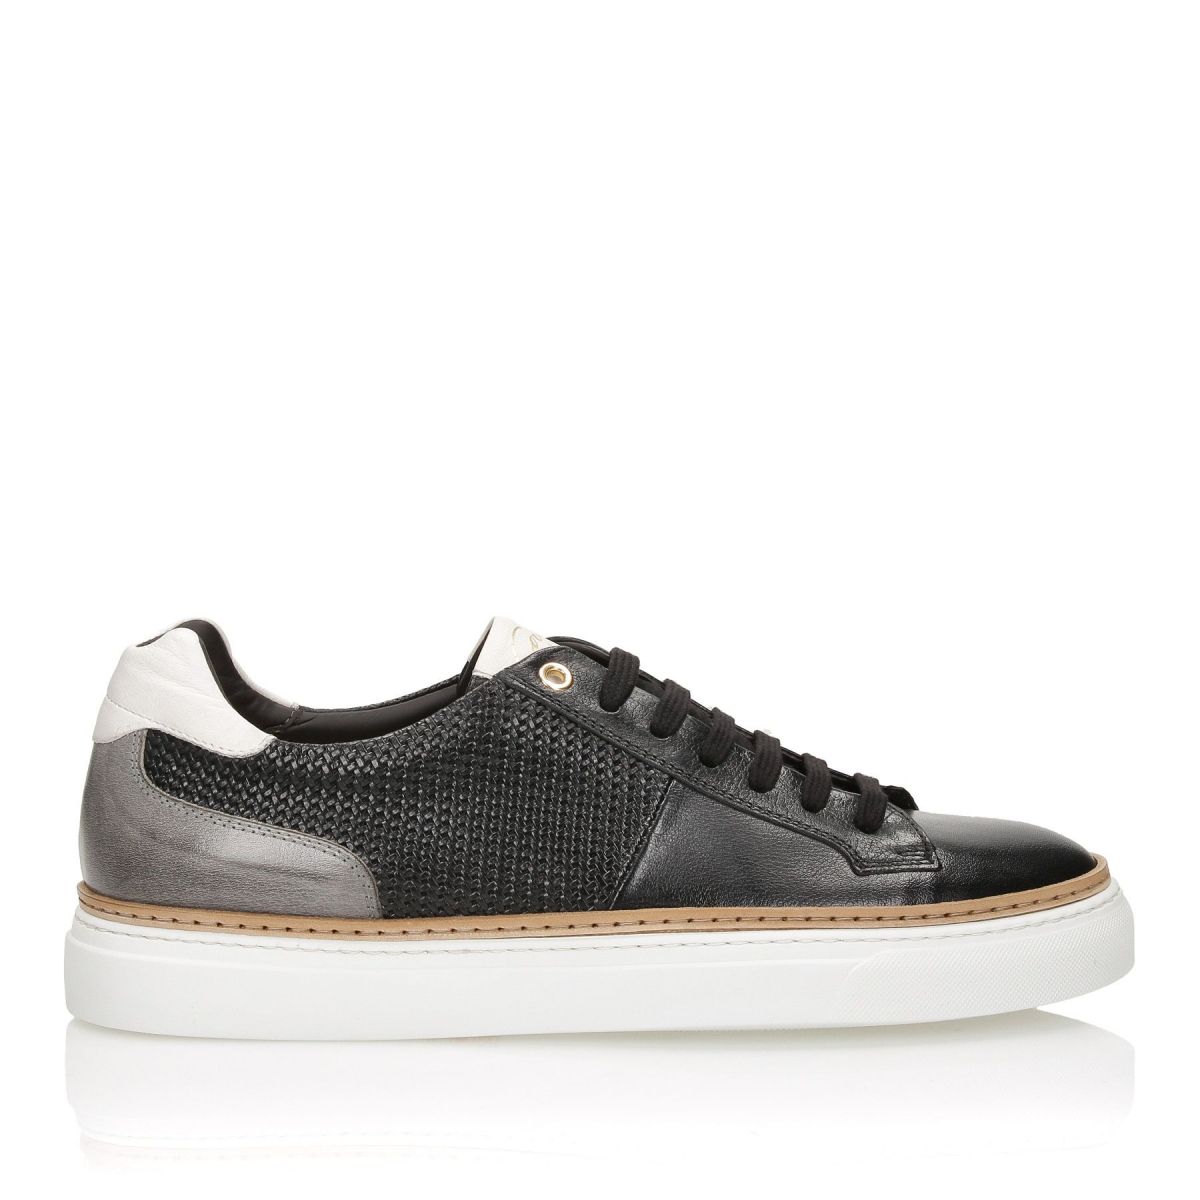 Corvari Sneakers Black 9660-NERO-020